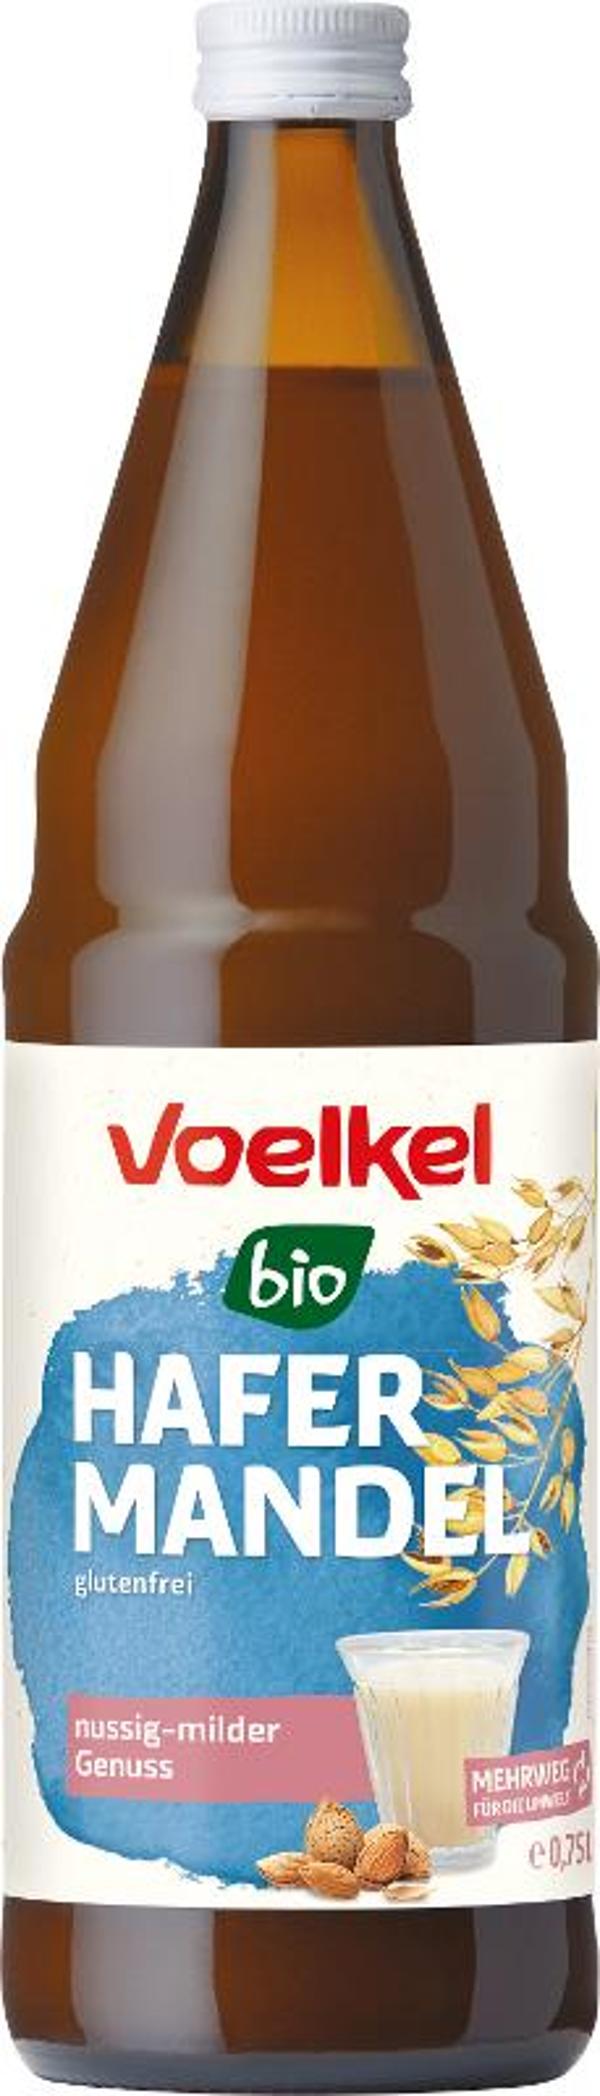 Produktfoto zu Hafer Mandel Drink Voelkel